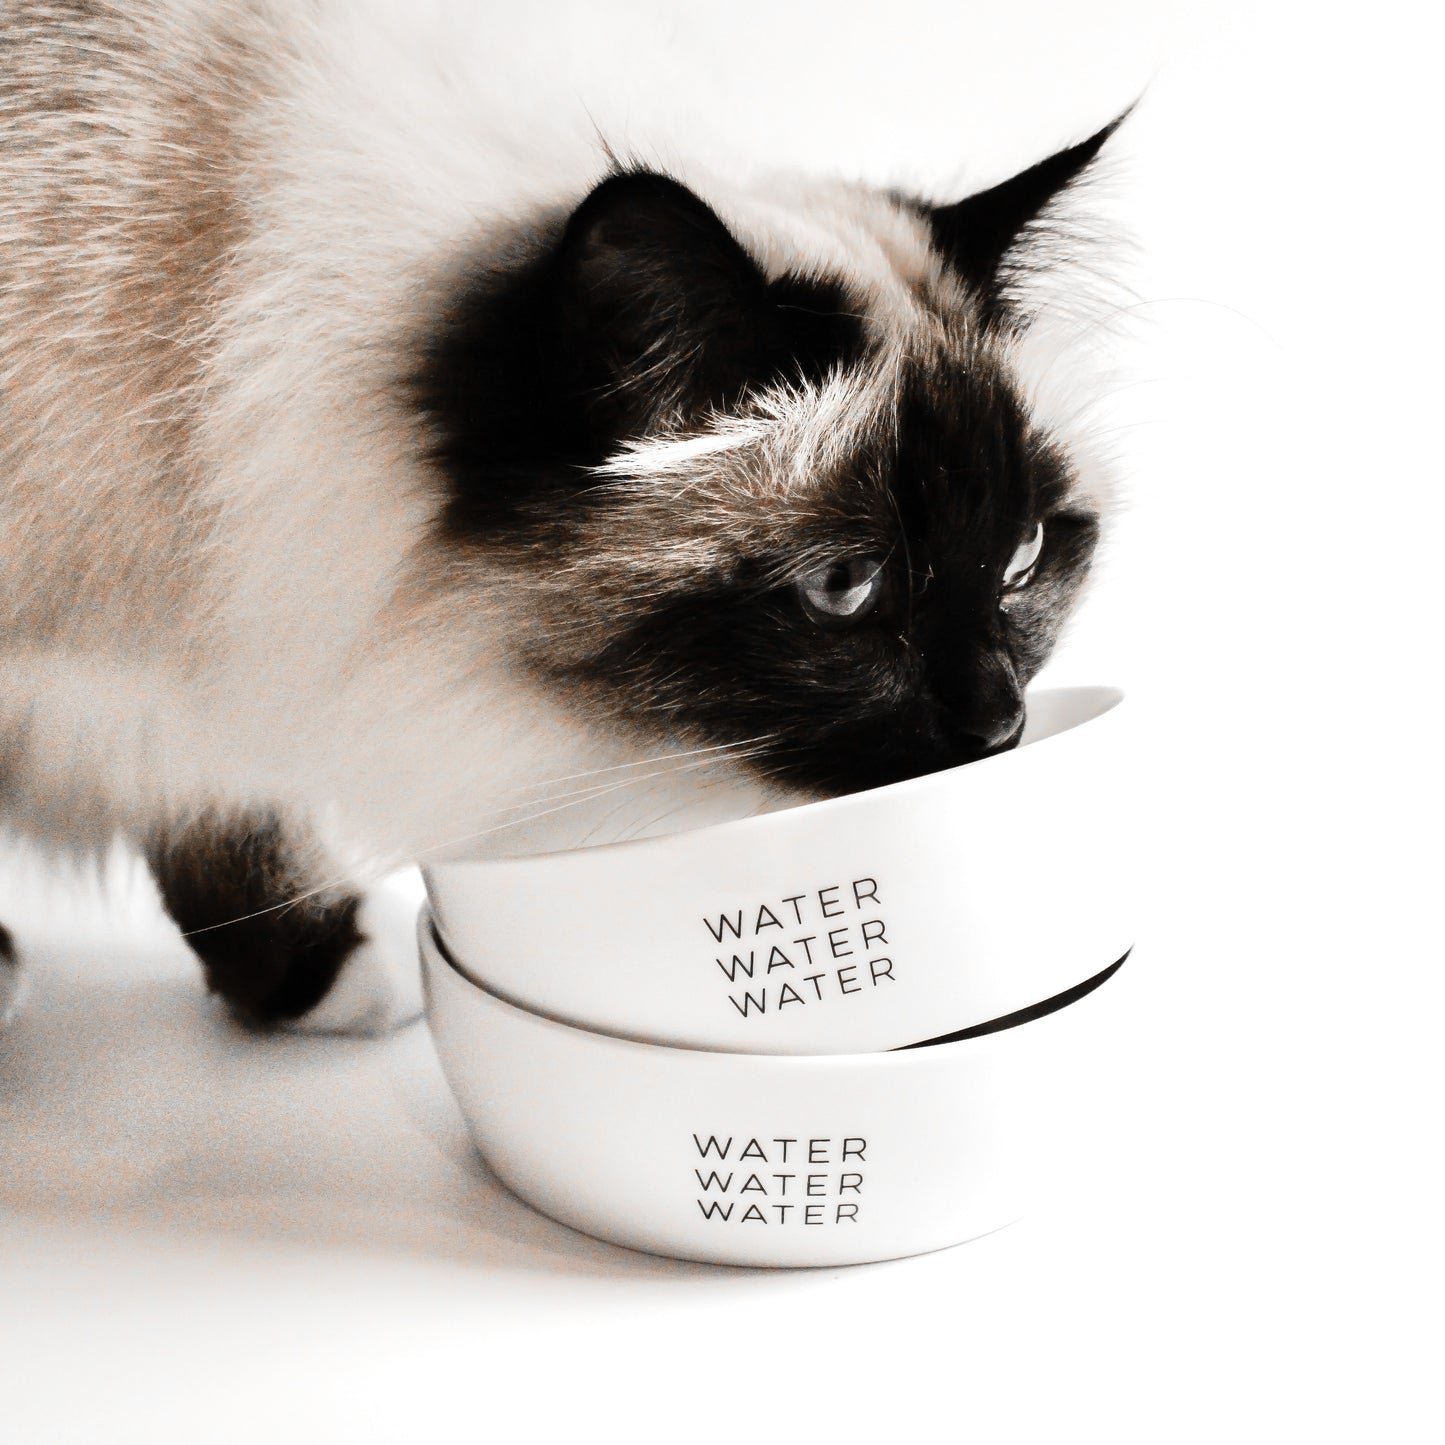 Eine Katze mit langem Fell leckt an zwei ineinander gestapelten weißen Keramiknäpfen mit dem Aufdruck "water water water".